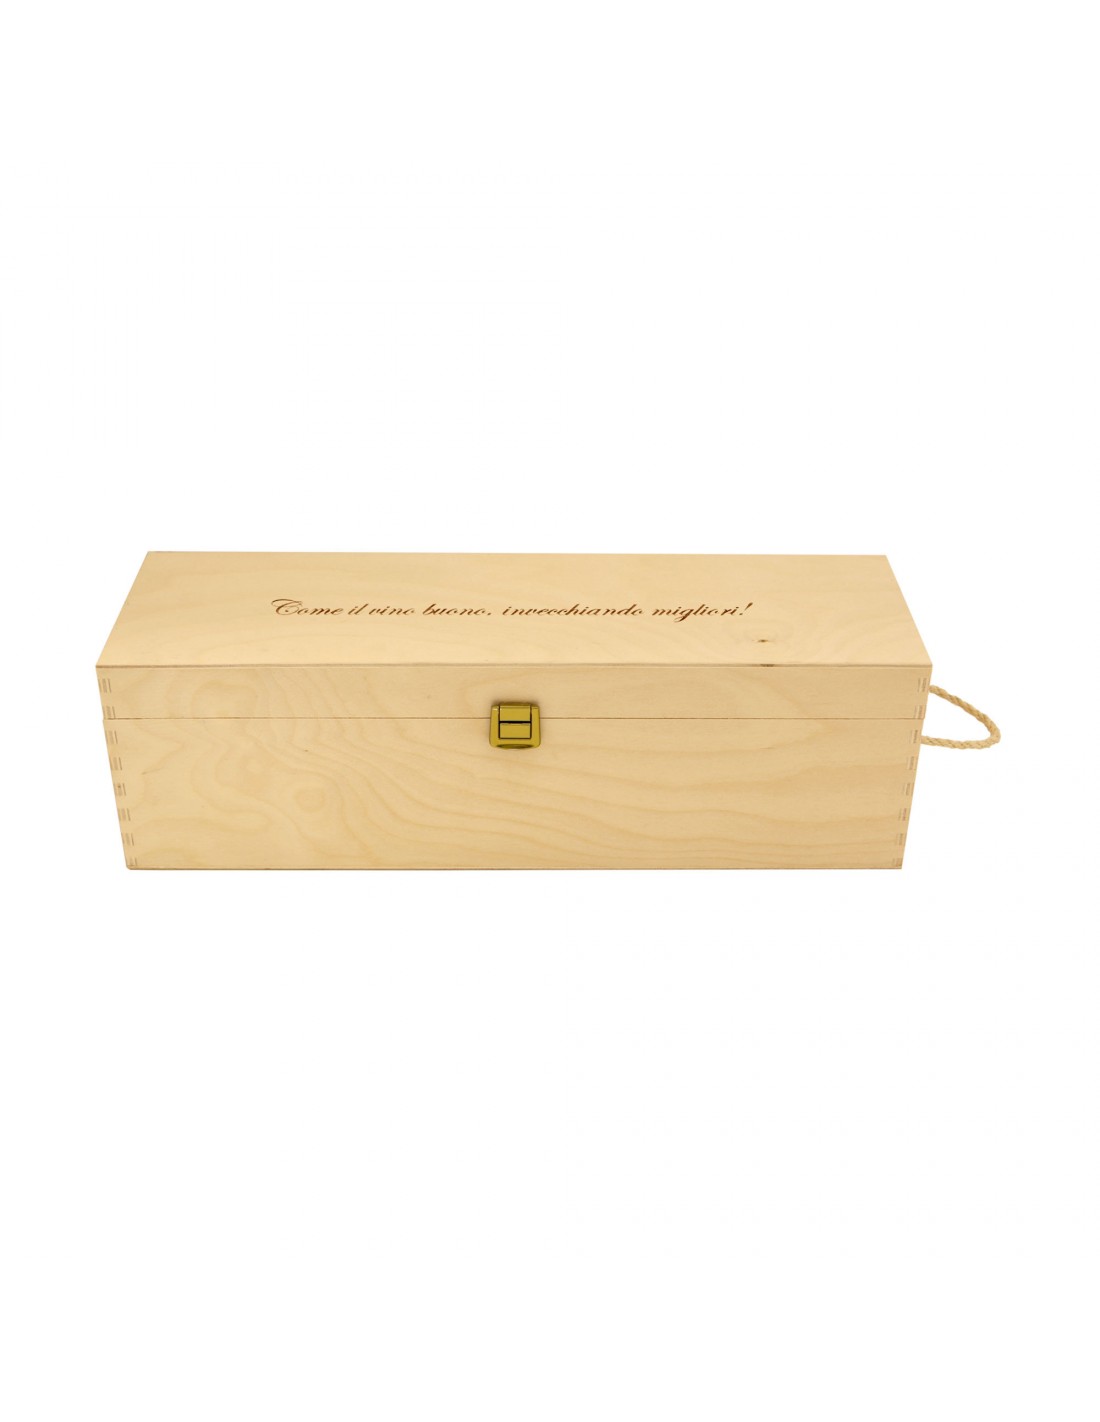 Cassetta in legno per vino personalizzata - 1 bottiglia doppio magnum - ilva doppio magnum WINE